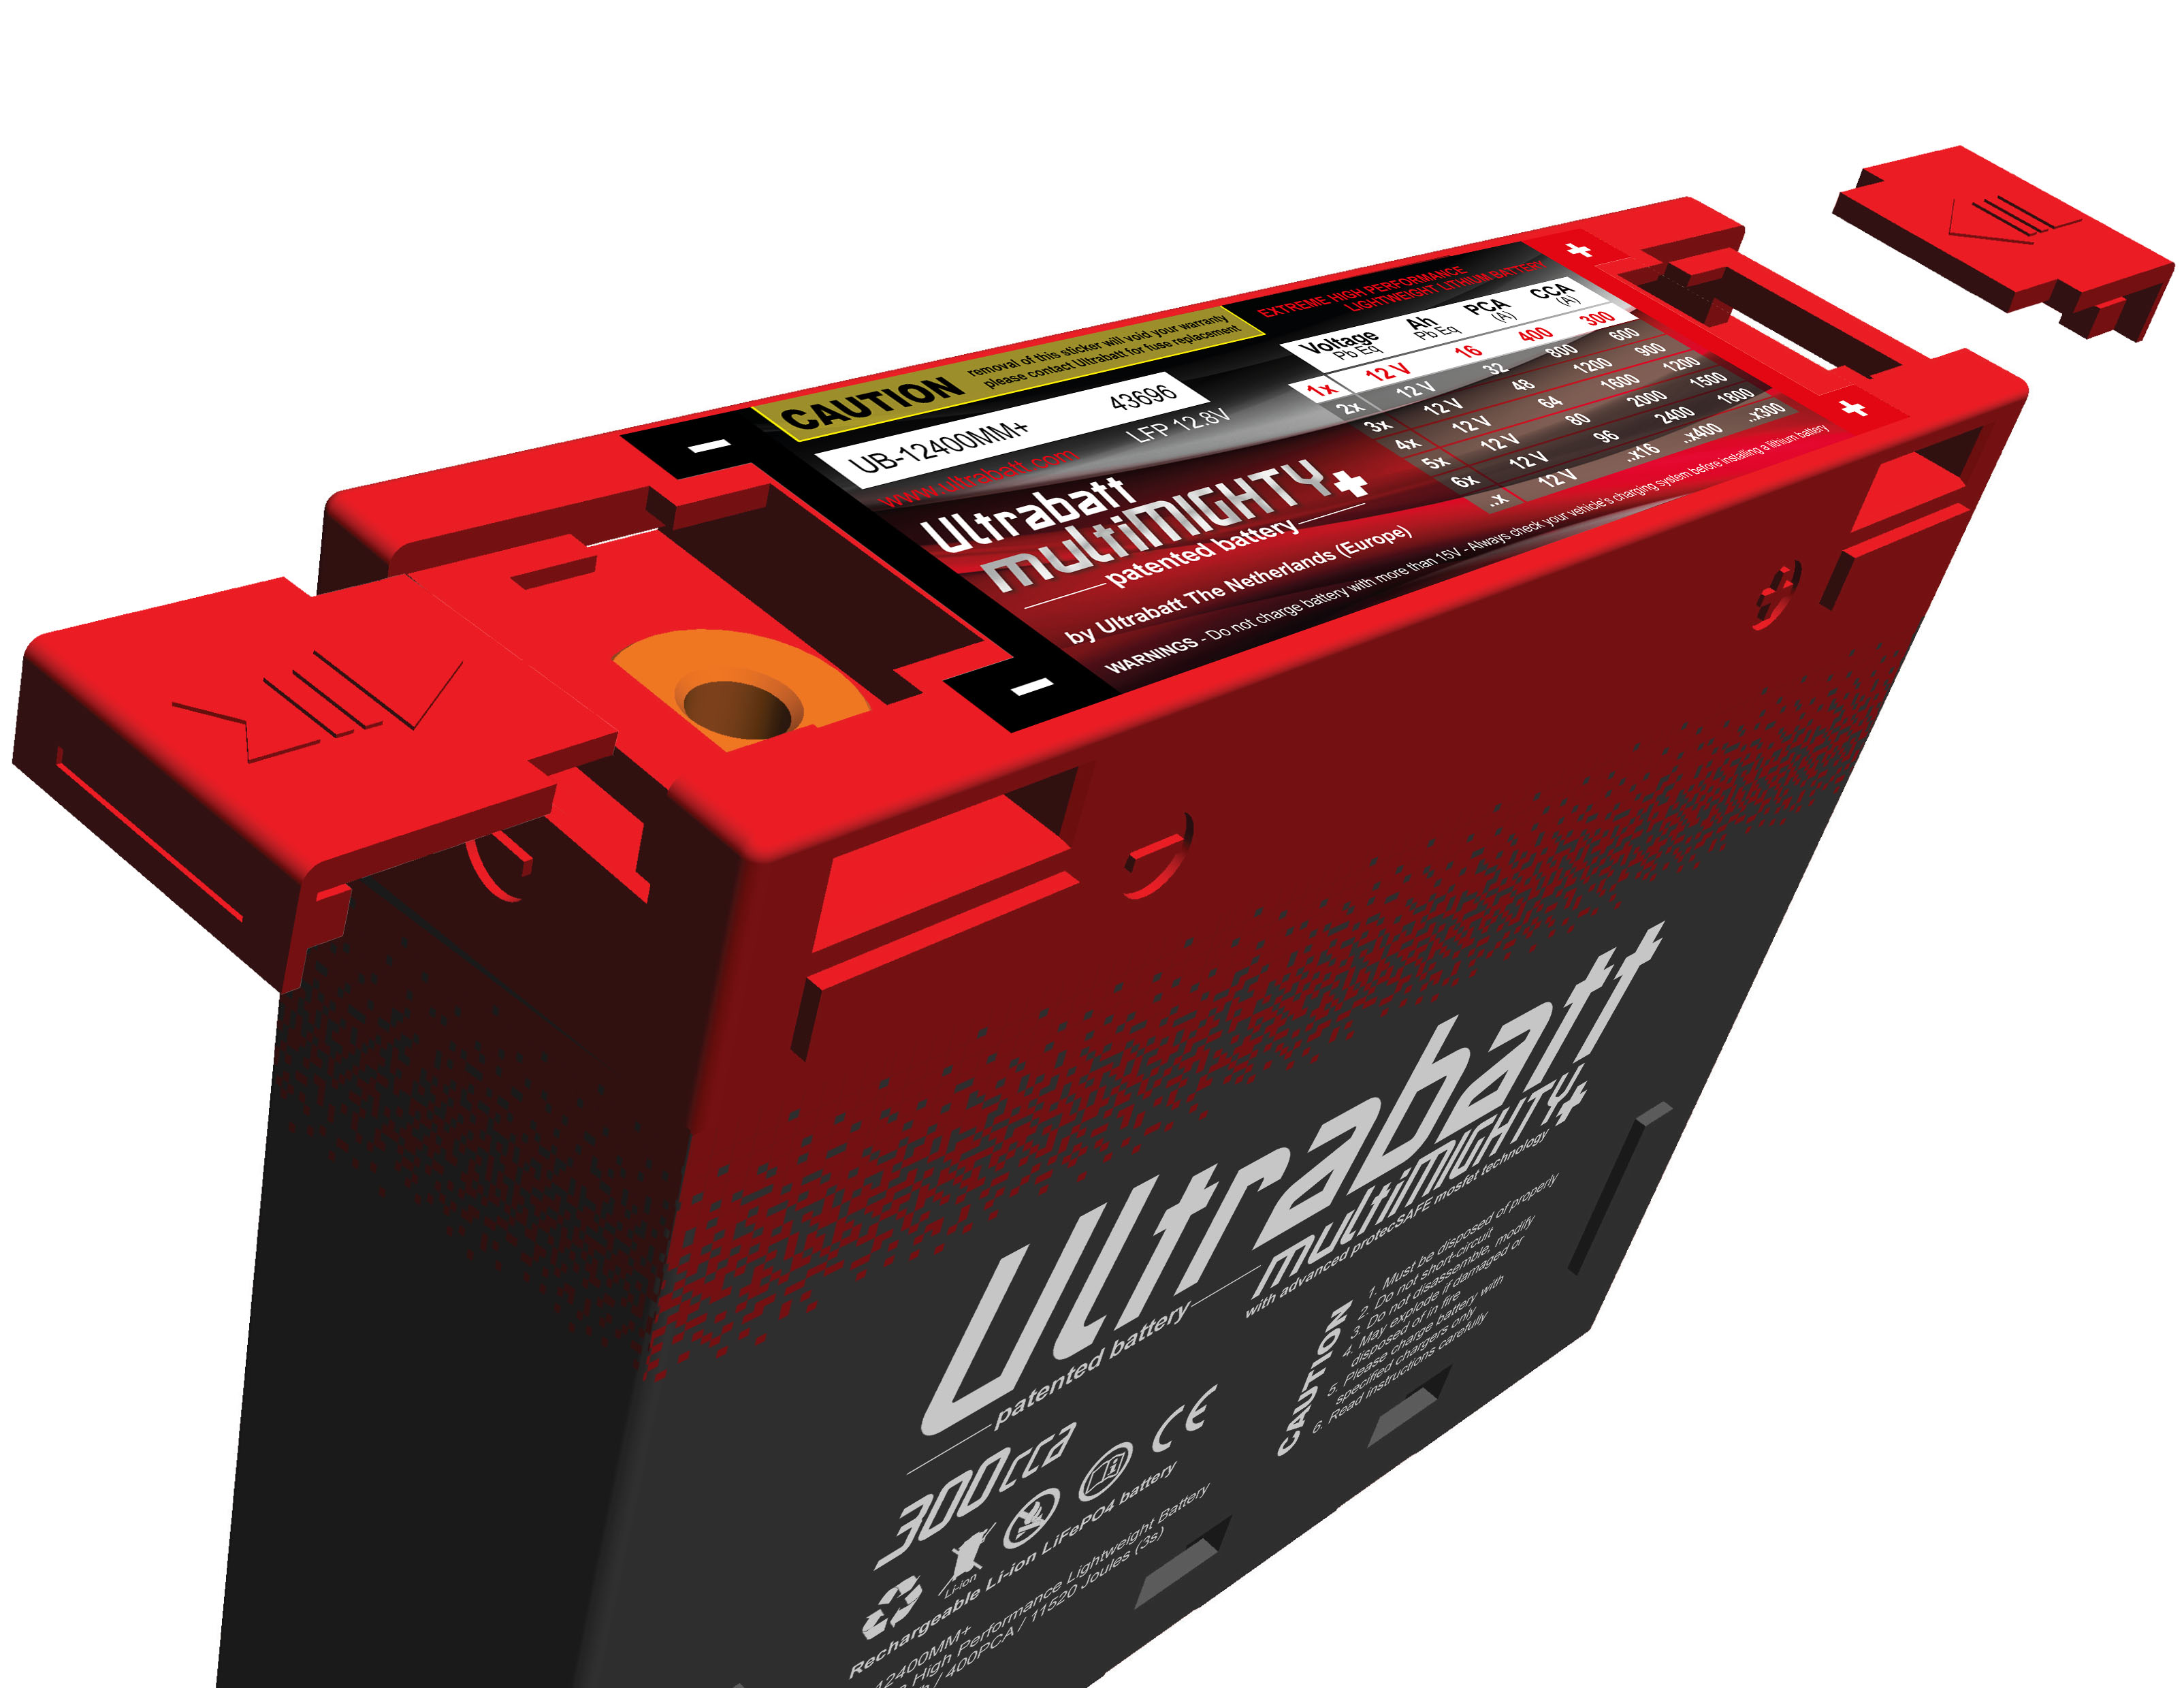 Bewährte 40 AH Lithium Starterbatterie - Neuheit!, 589,00 €